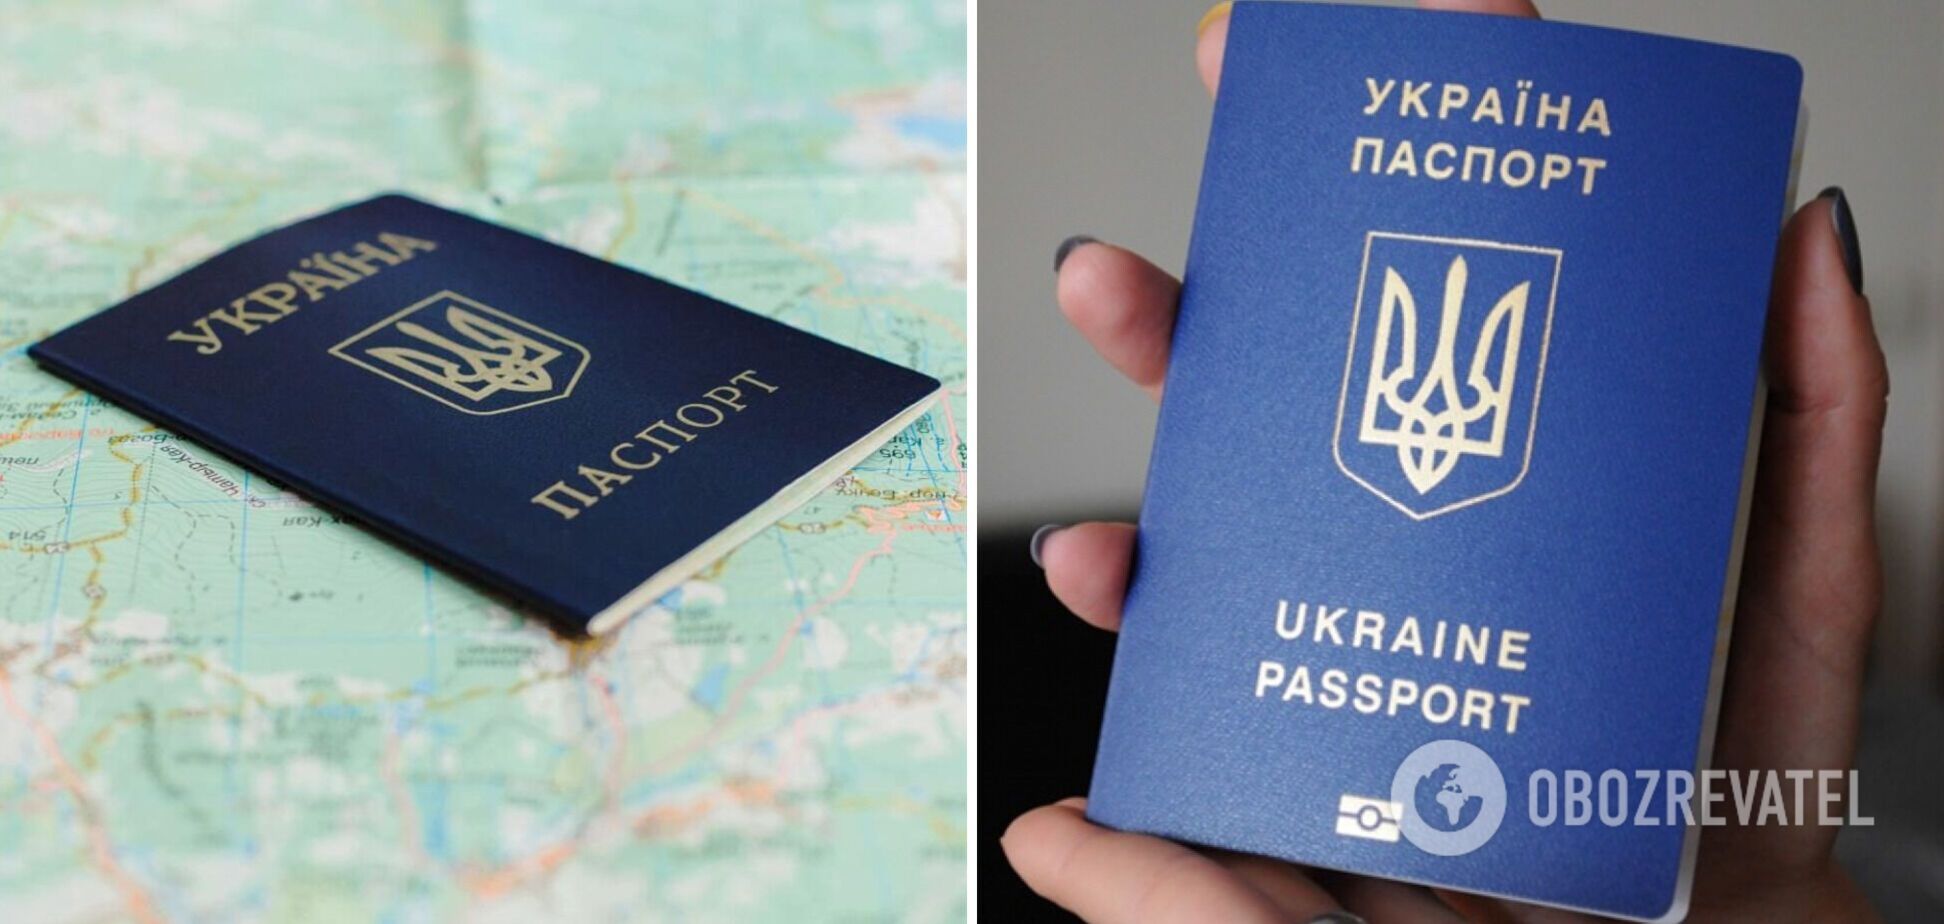 Оформлення внутрішнього та закордонного паспортів під час воєнного стану: в Україні змінили процедуру